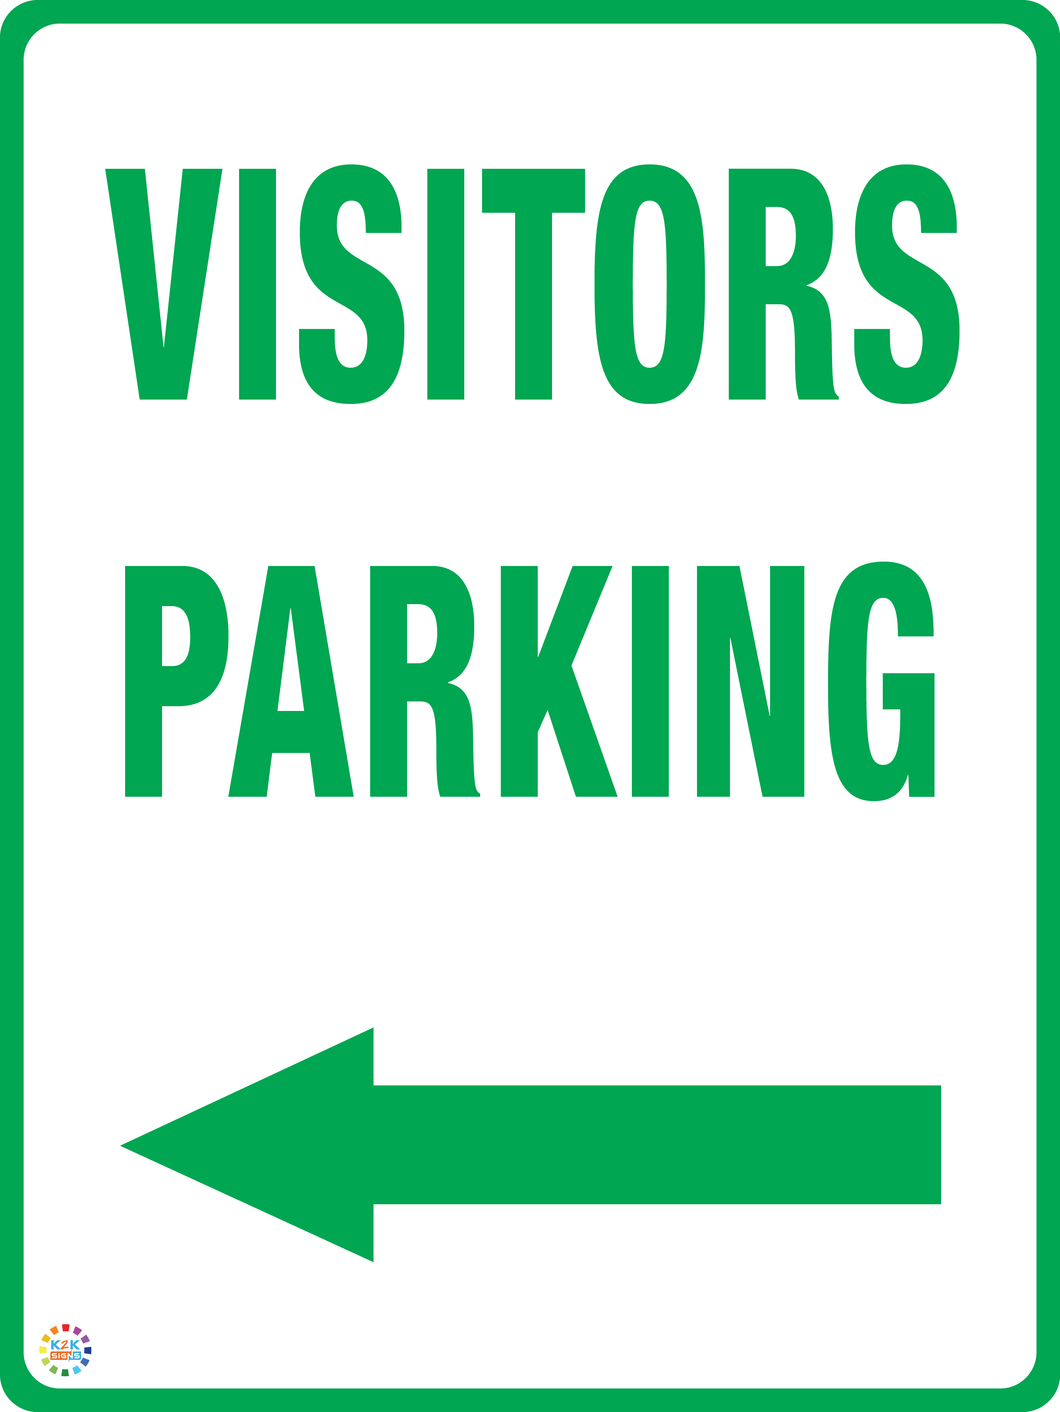 Visitors Parking (Left Arrow)